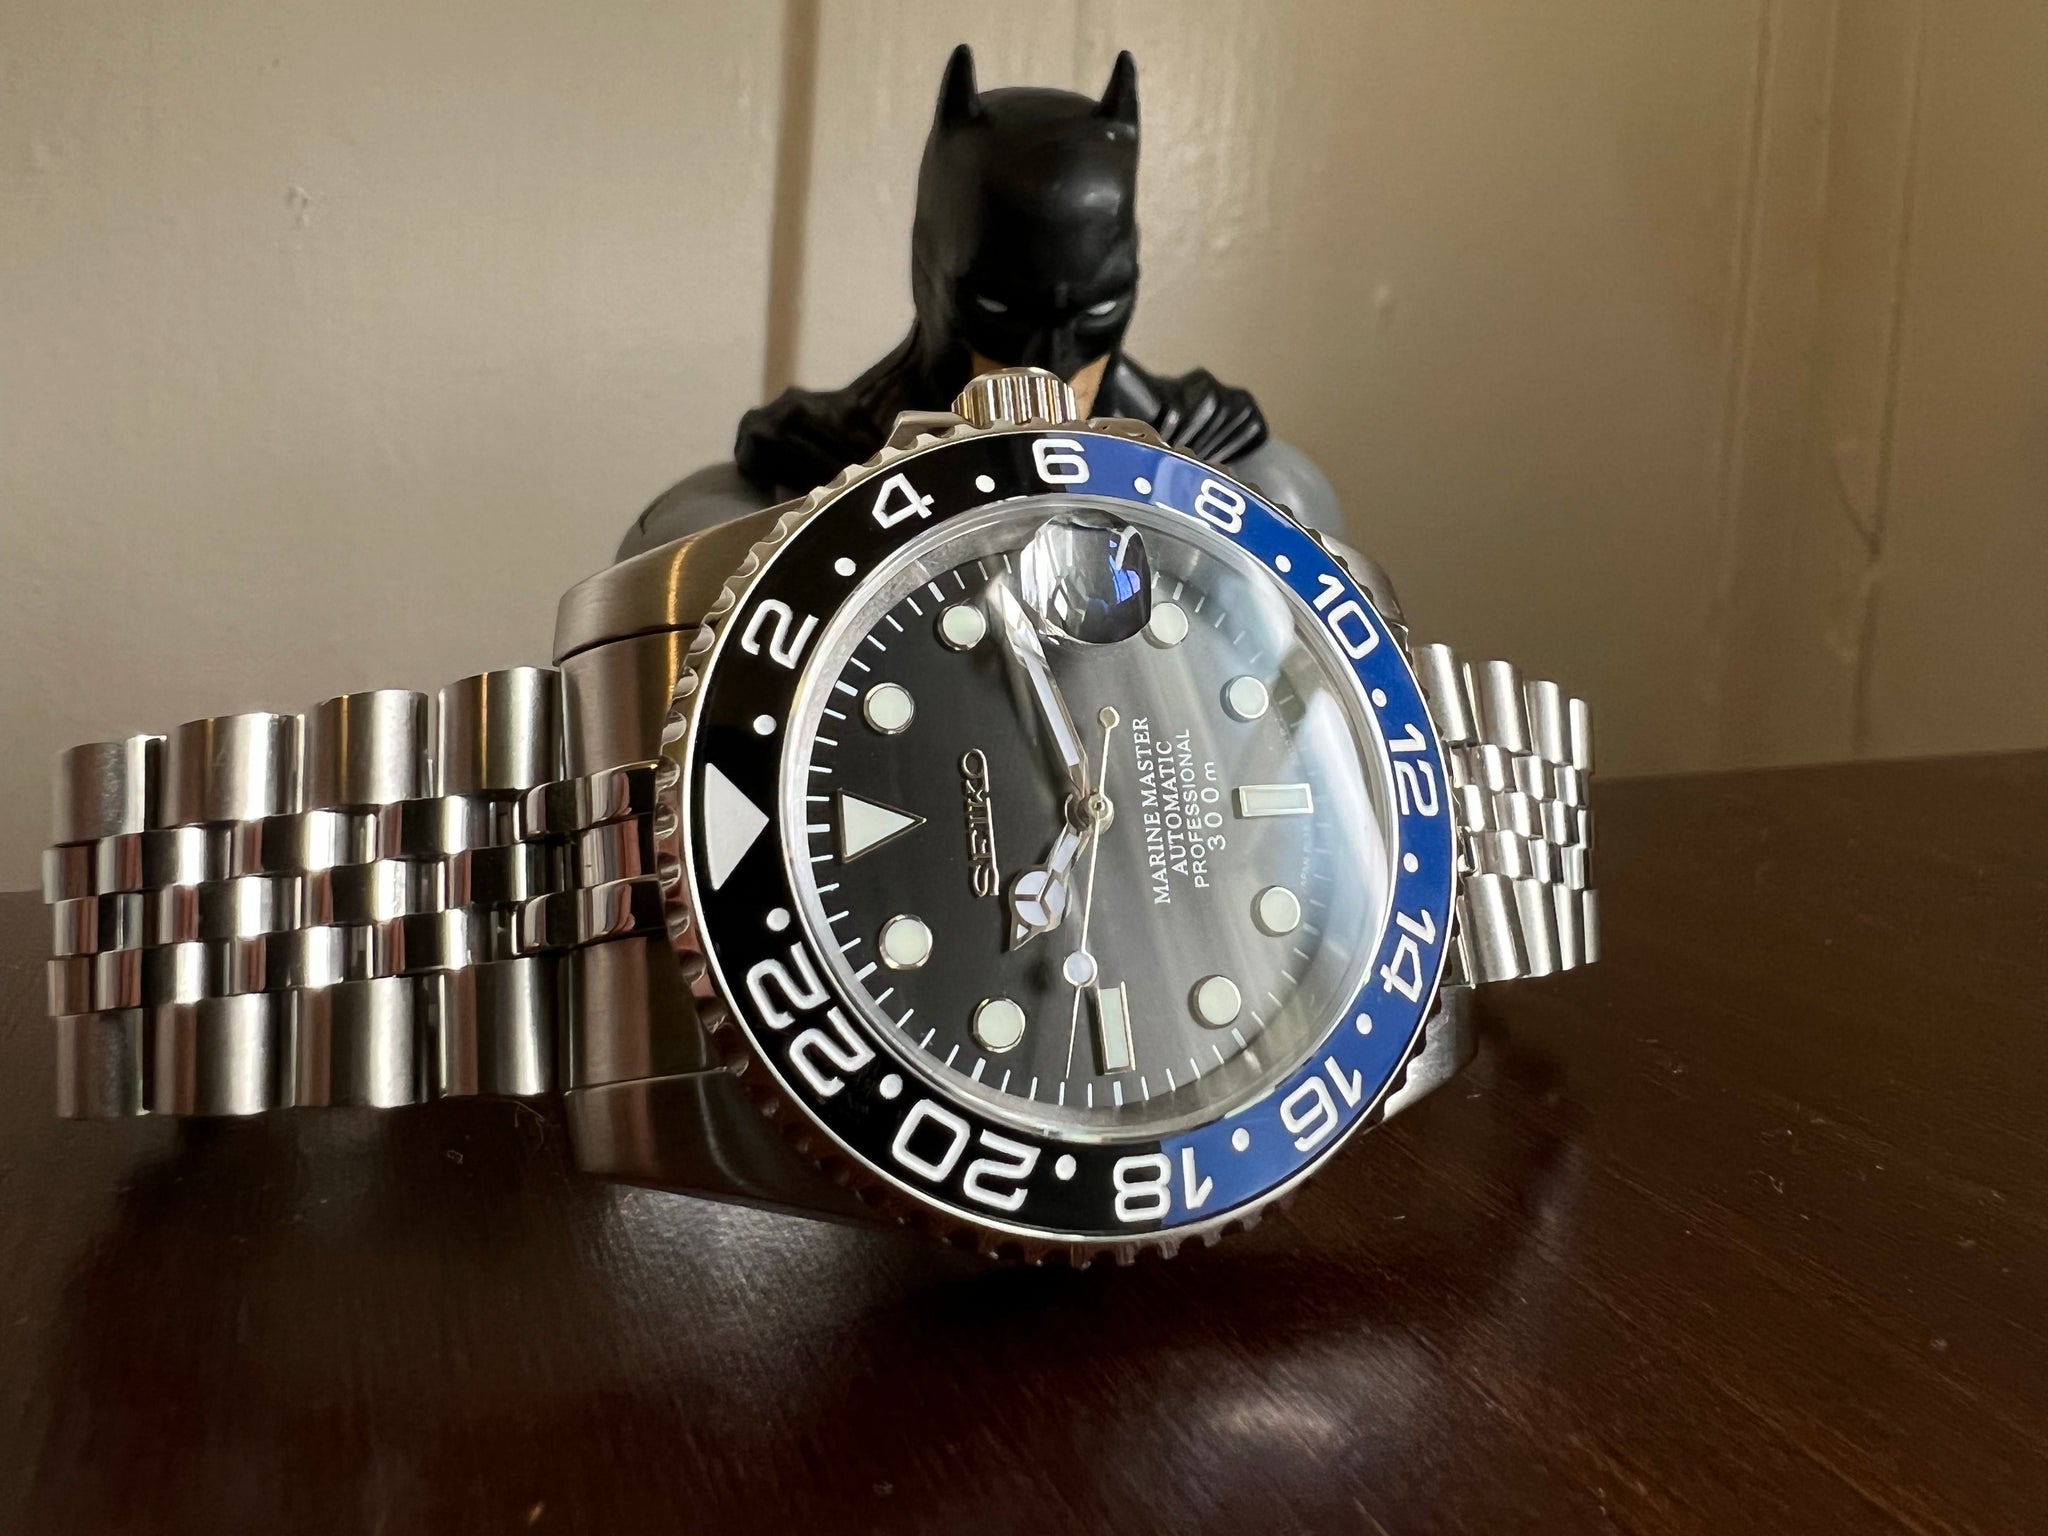 Batman GMT Seiko Mod – Tropic Timeworks